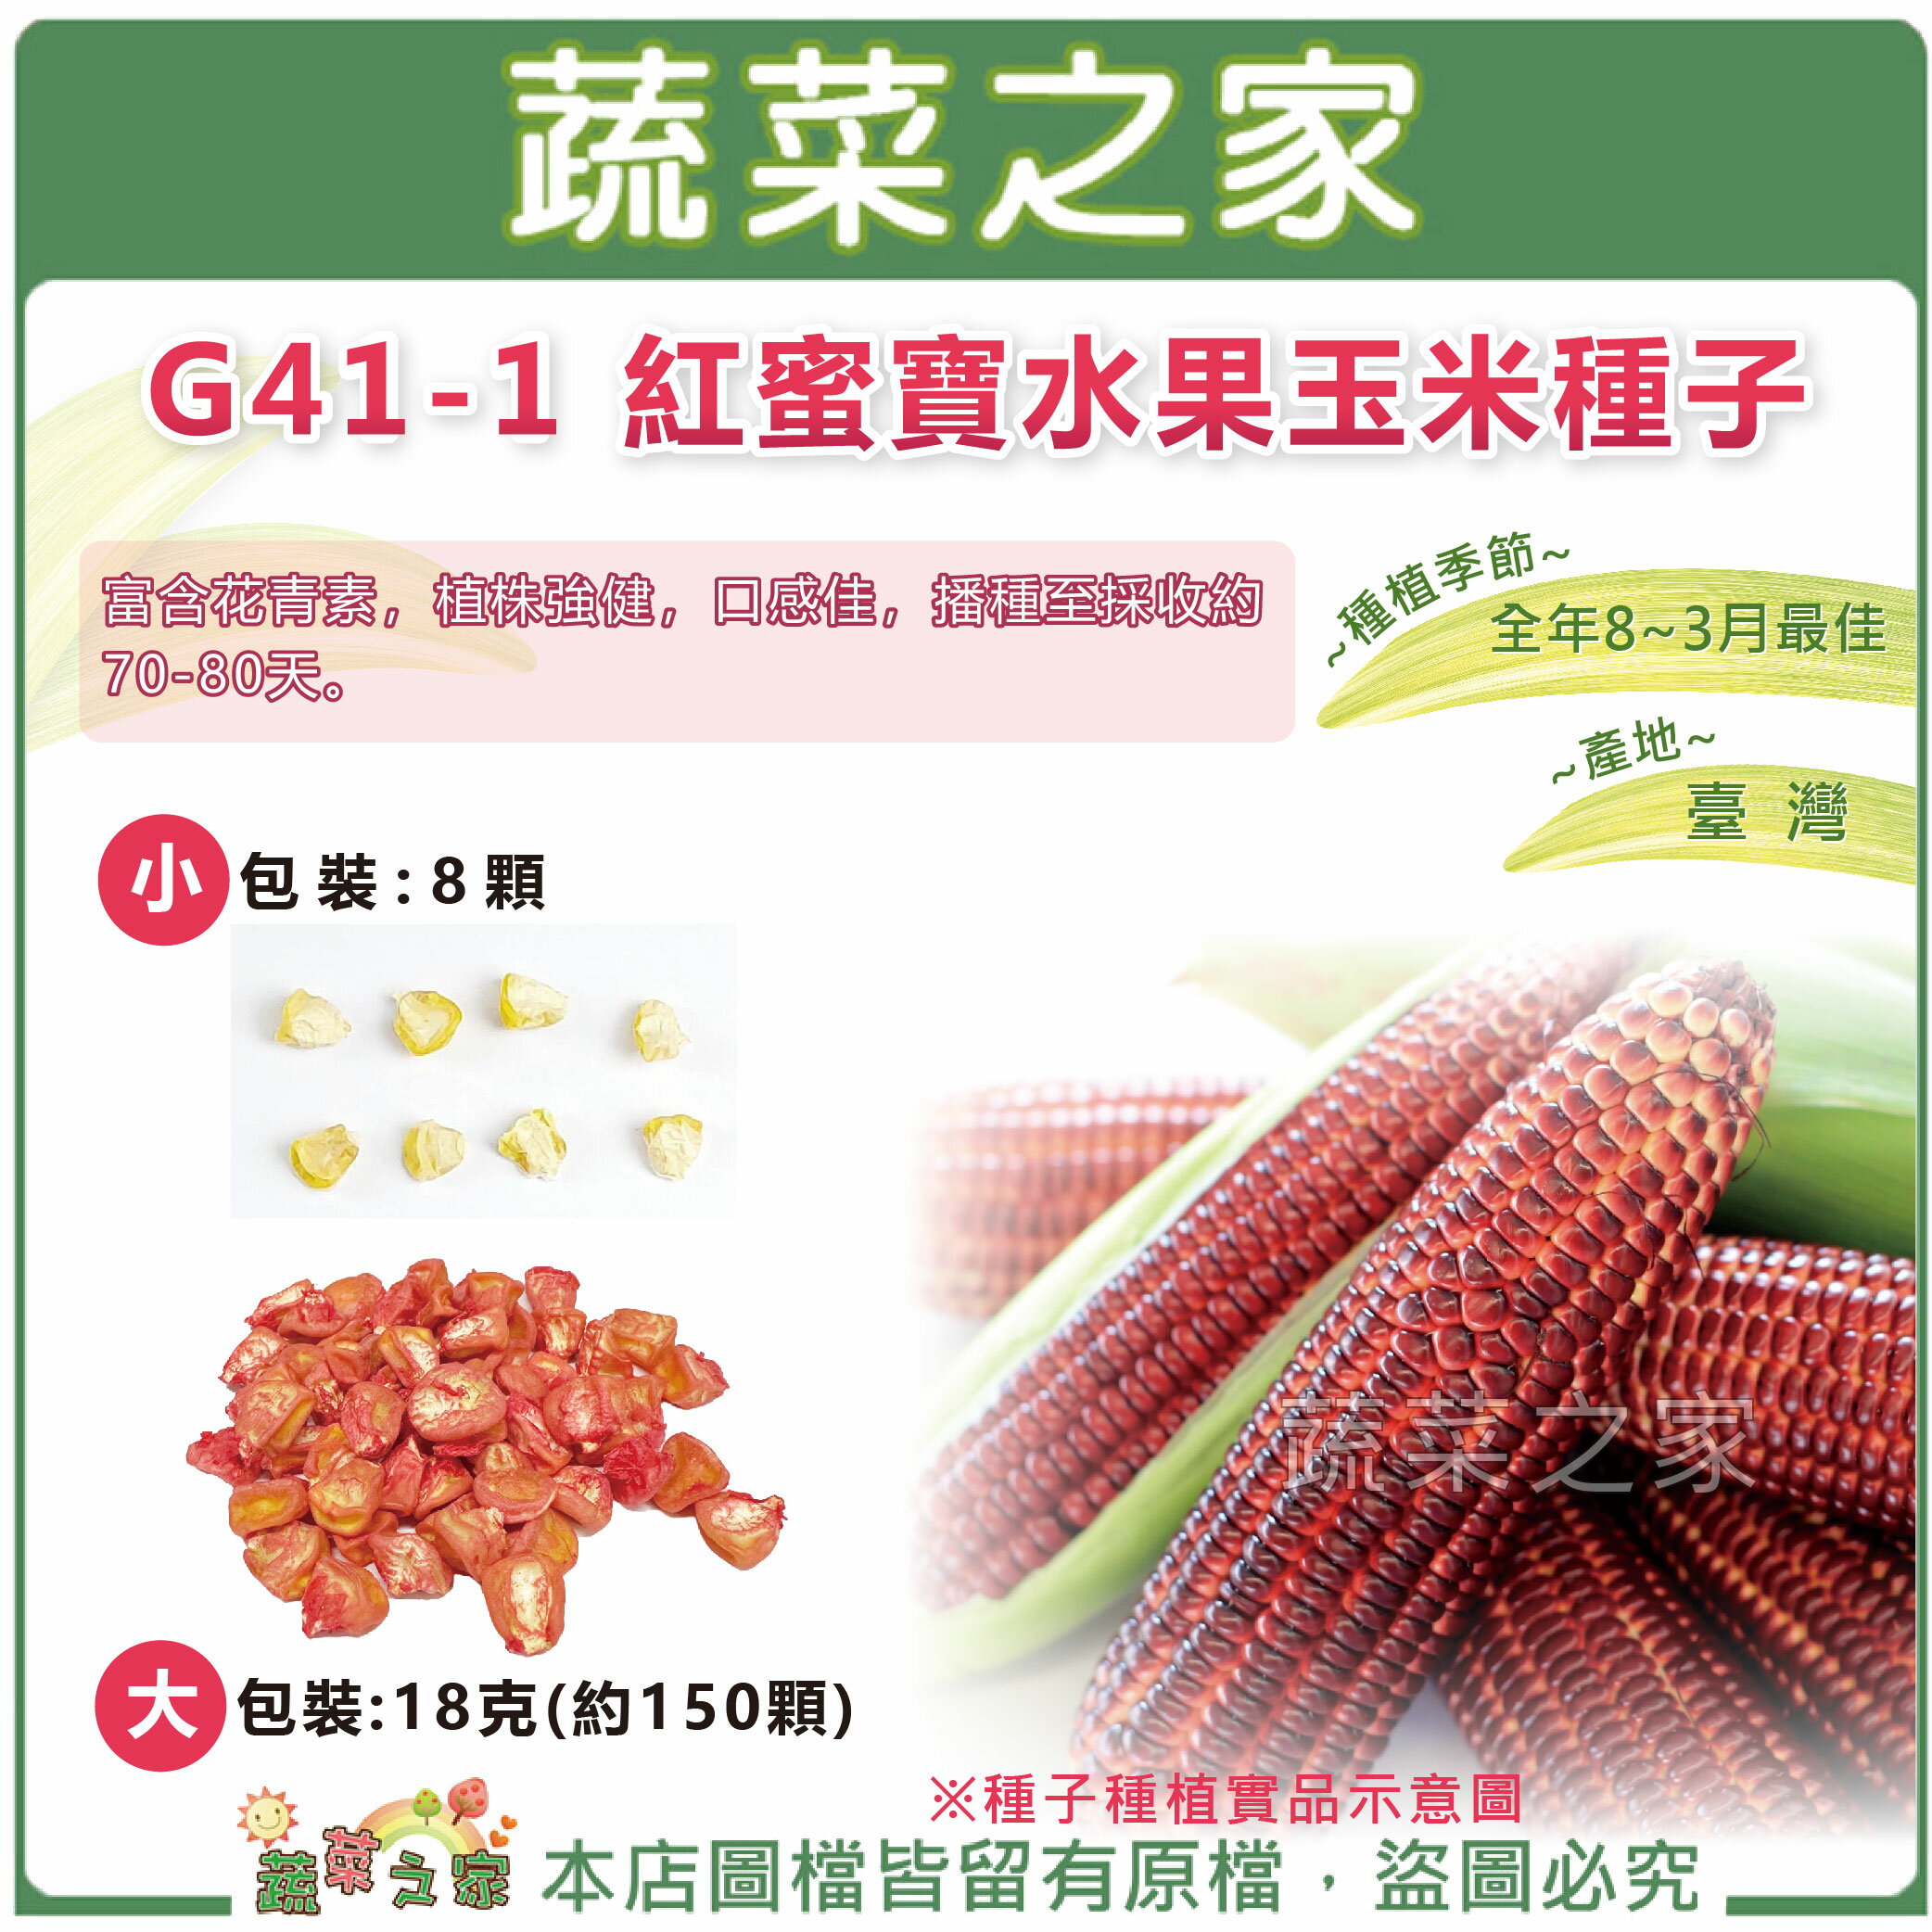 【蔬菜之家】G41-1.紅蜜寶水果玉米種子 (共2種規格可選)